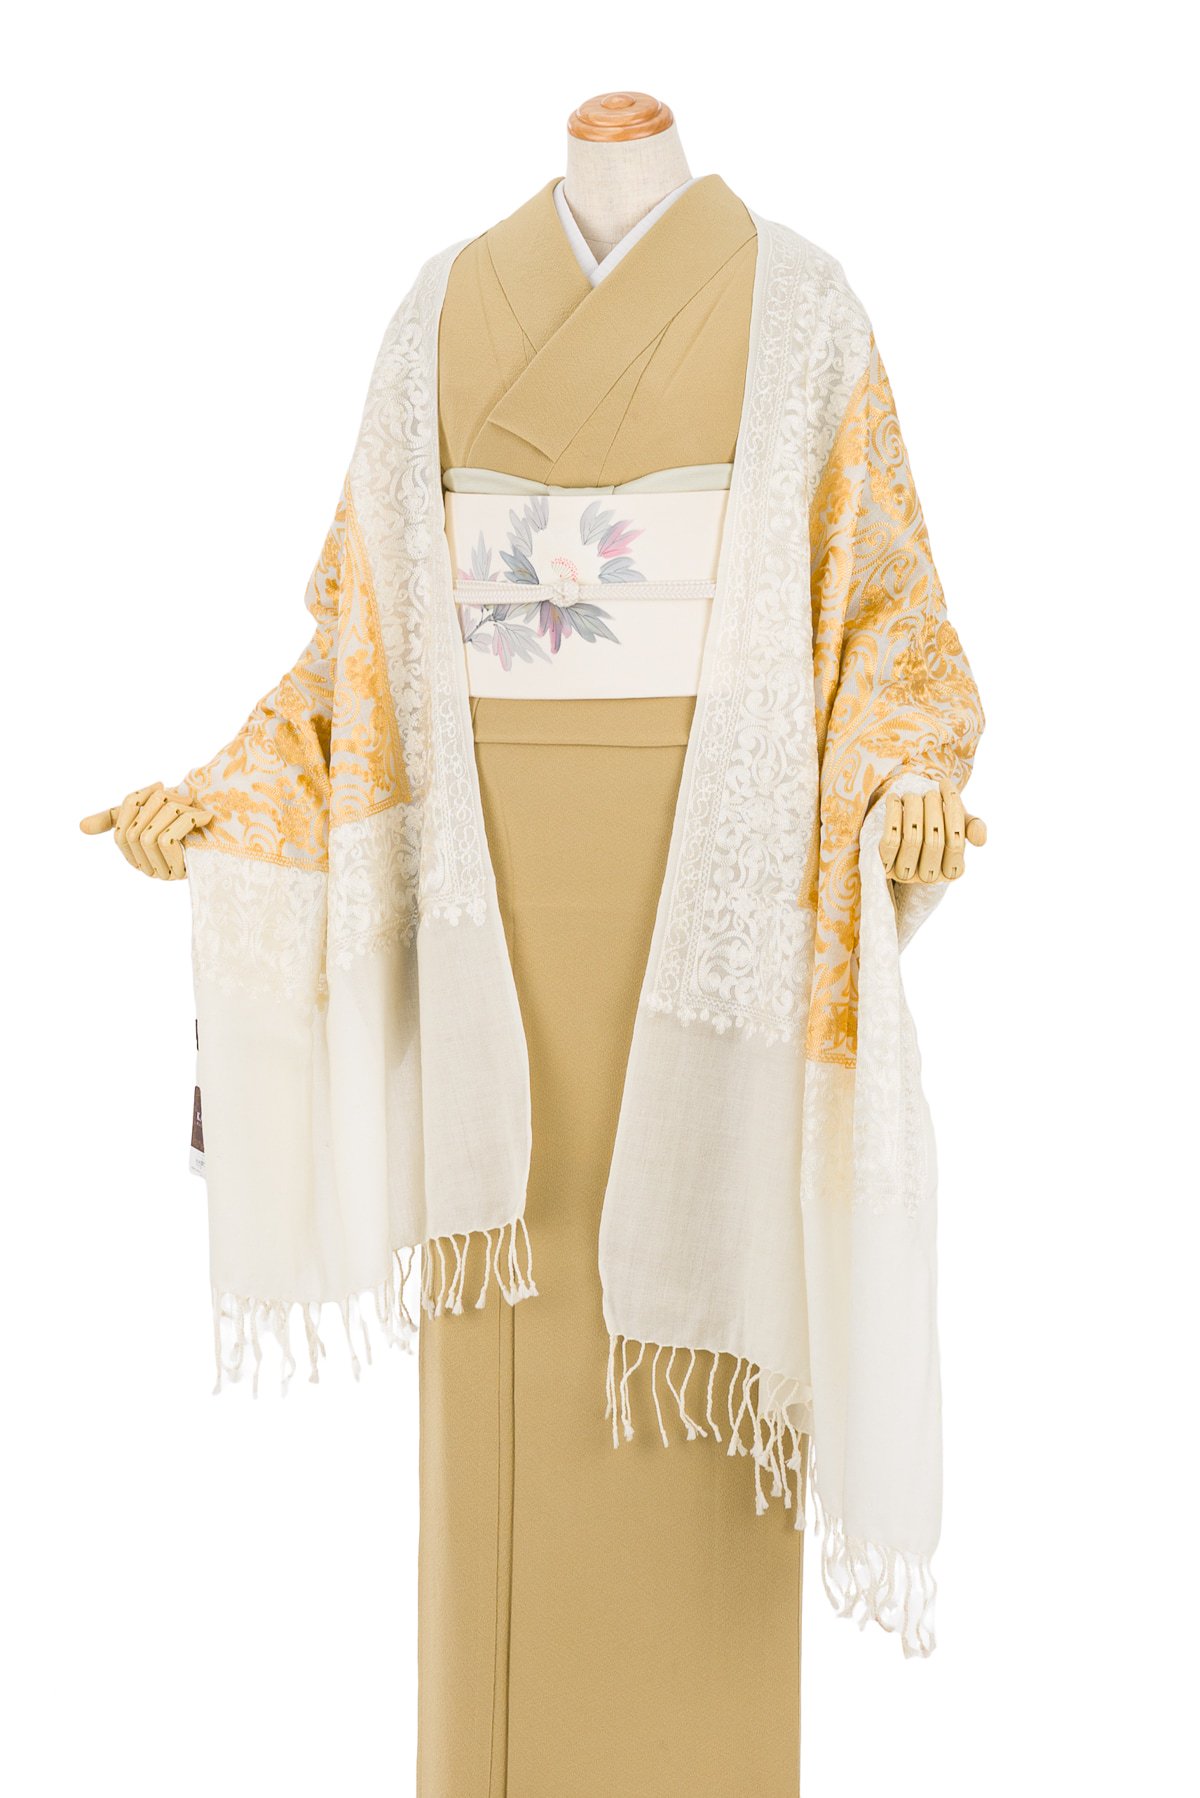 新品 カシミール 刺繍ストール インド製 70×200 和装 洋装 ショール素材ウール